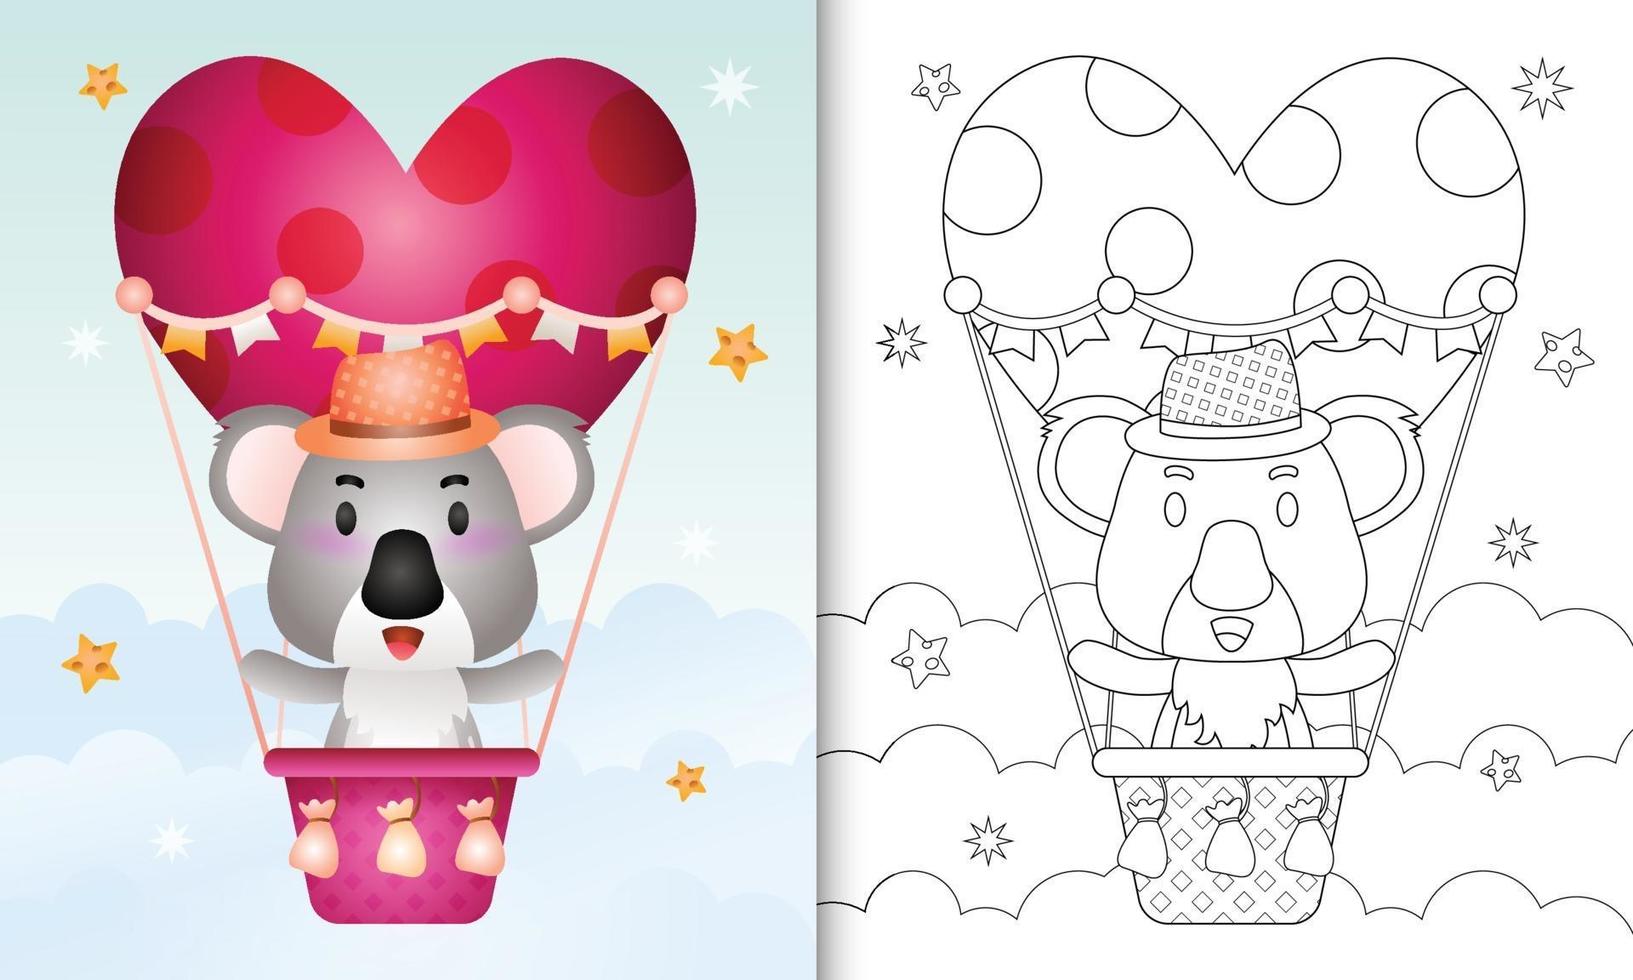 kleurboek voor kinderen met een schattig koalamannetje op valentijnsdag met een heteluchtballon vector